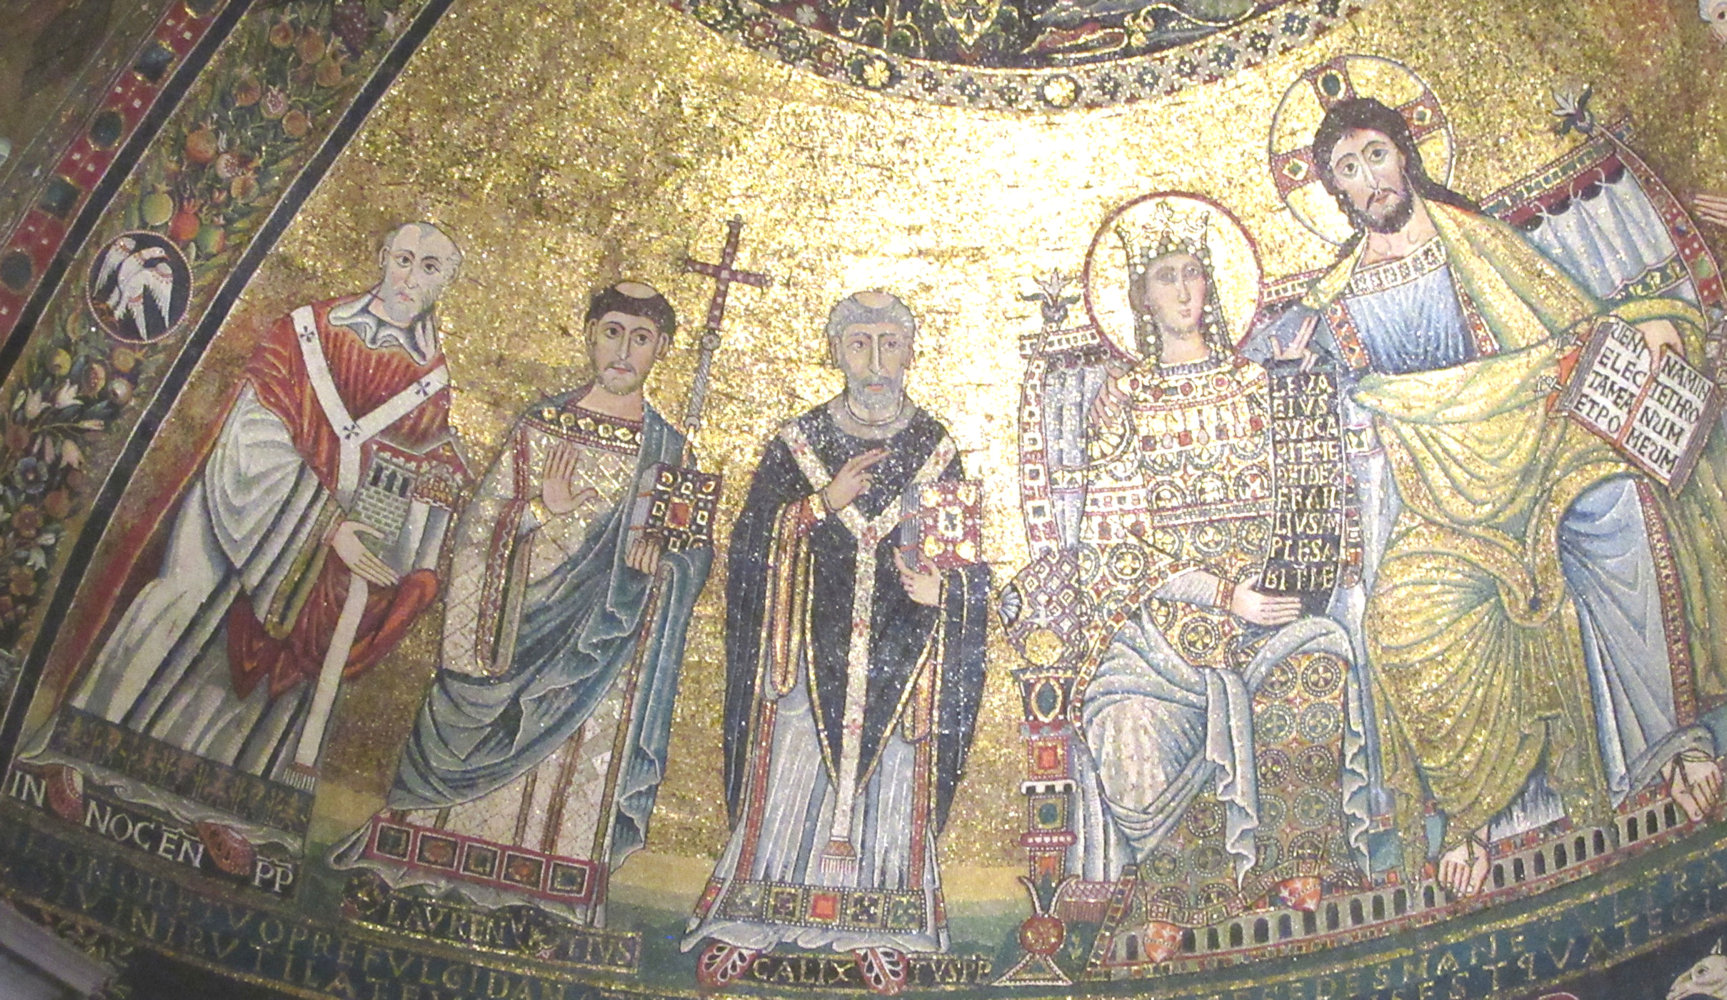 Apsismosaik: Callistus (Mitte) mit Maria und Jesus Christus sowie Laurentius von Rom ( 2. von links) und Papst Innozenz II. (ganz links), um 1140, in der Kirche Santa Maria in Trastevere